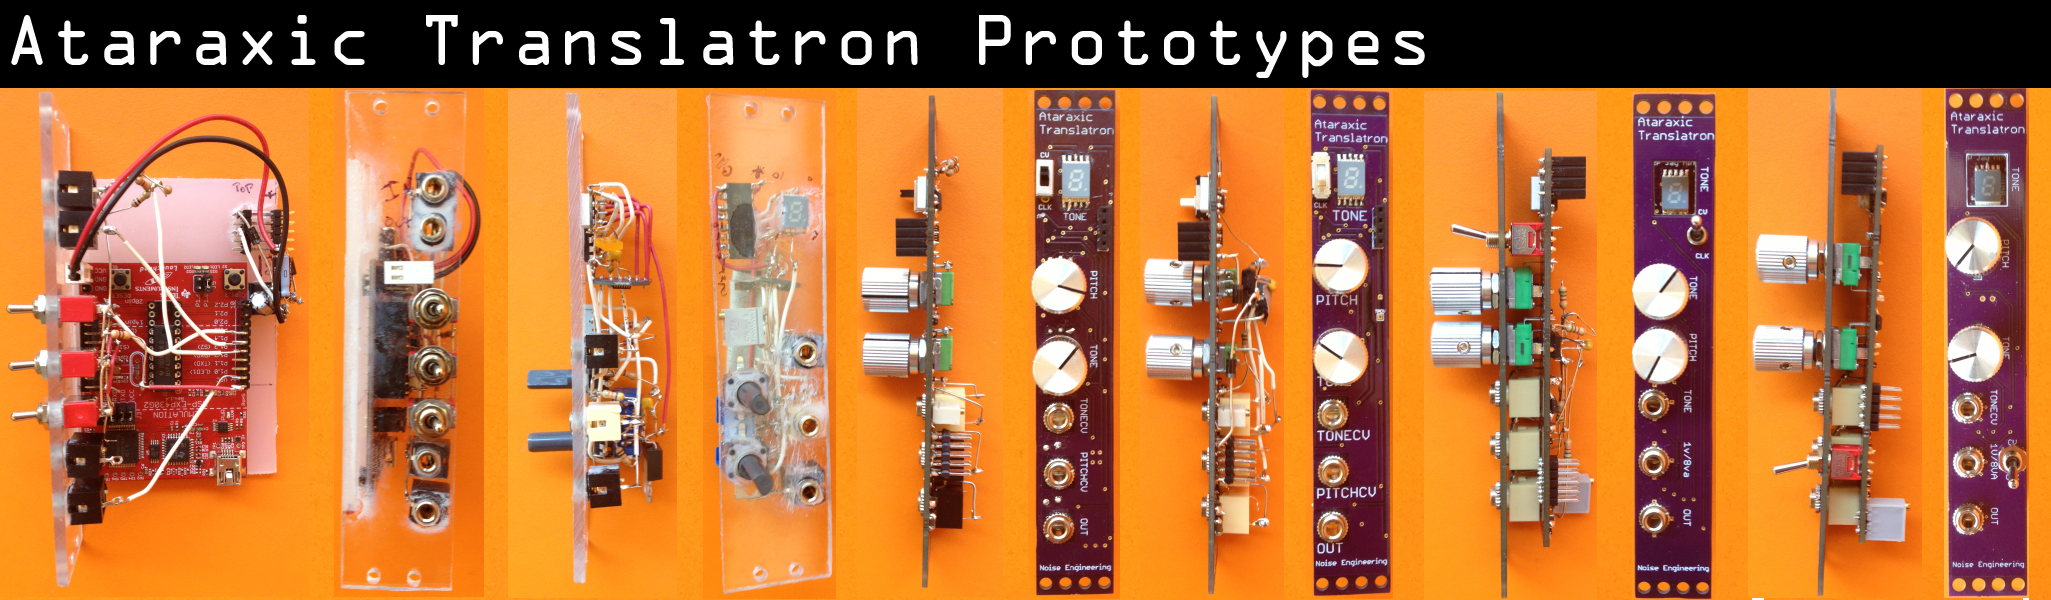 Ataraxic Translatron prototypes